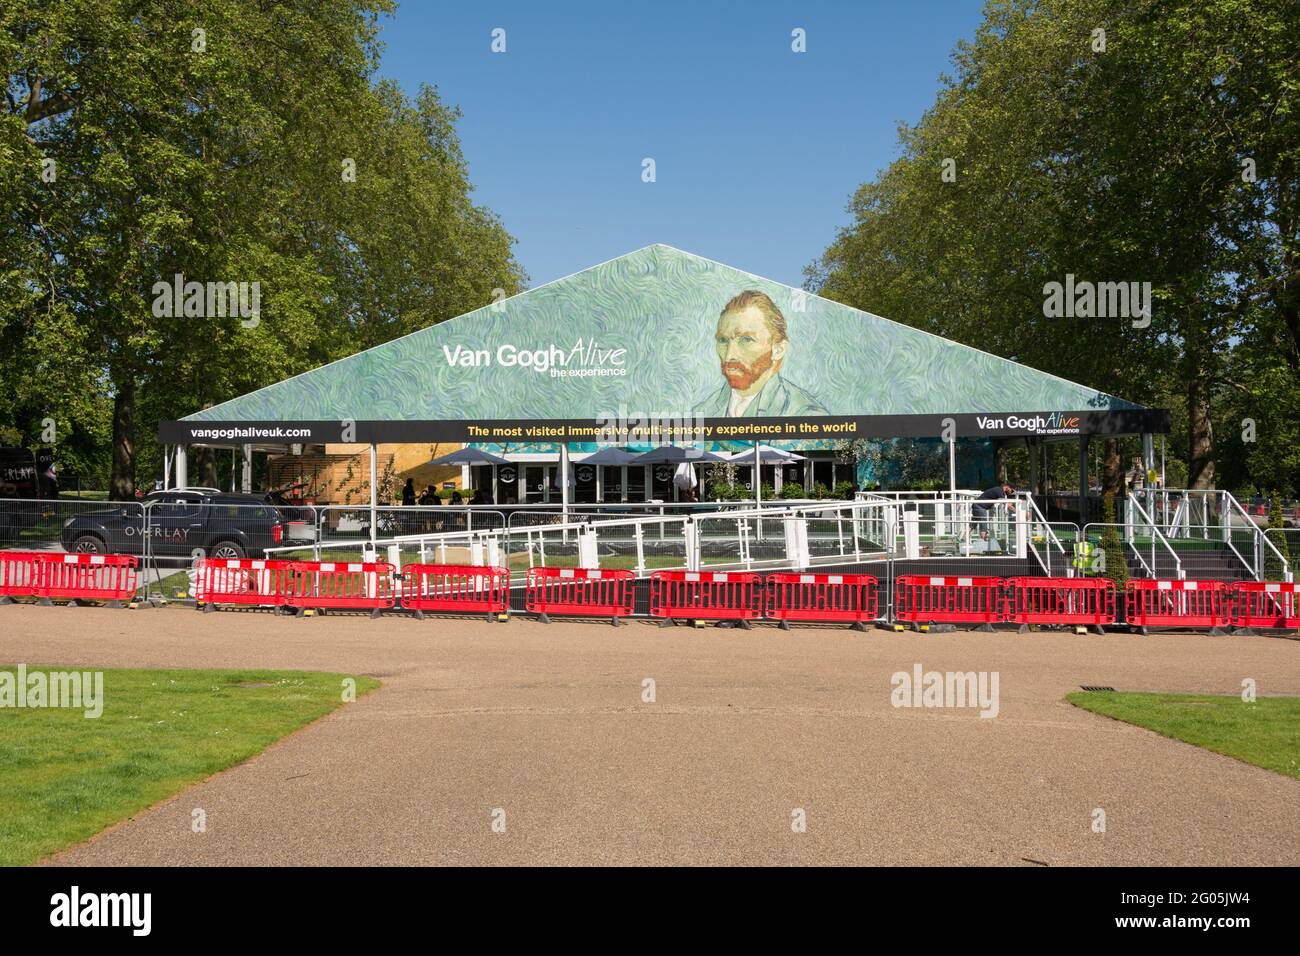 Le bientôt ouvert Van Gogh Alive expérience immersive et multi-sensoriel à Kensington Gardens, Kensington, Londres, W8, Angleterre, ROYAUME-UNI Banque D'Images